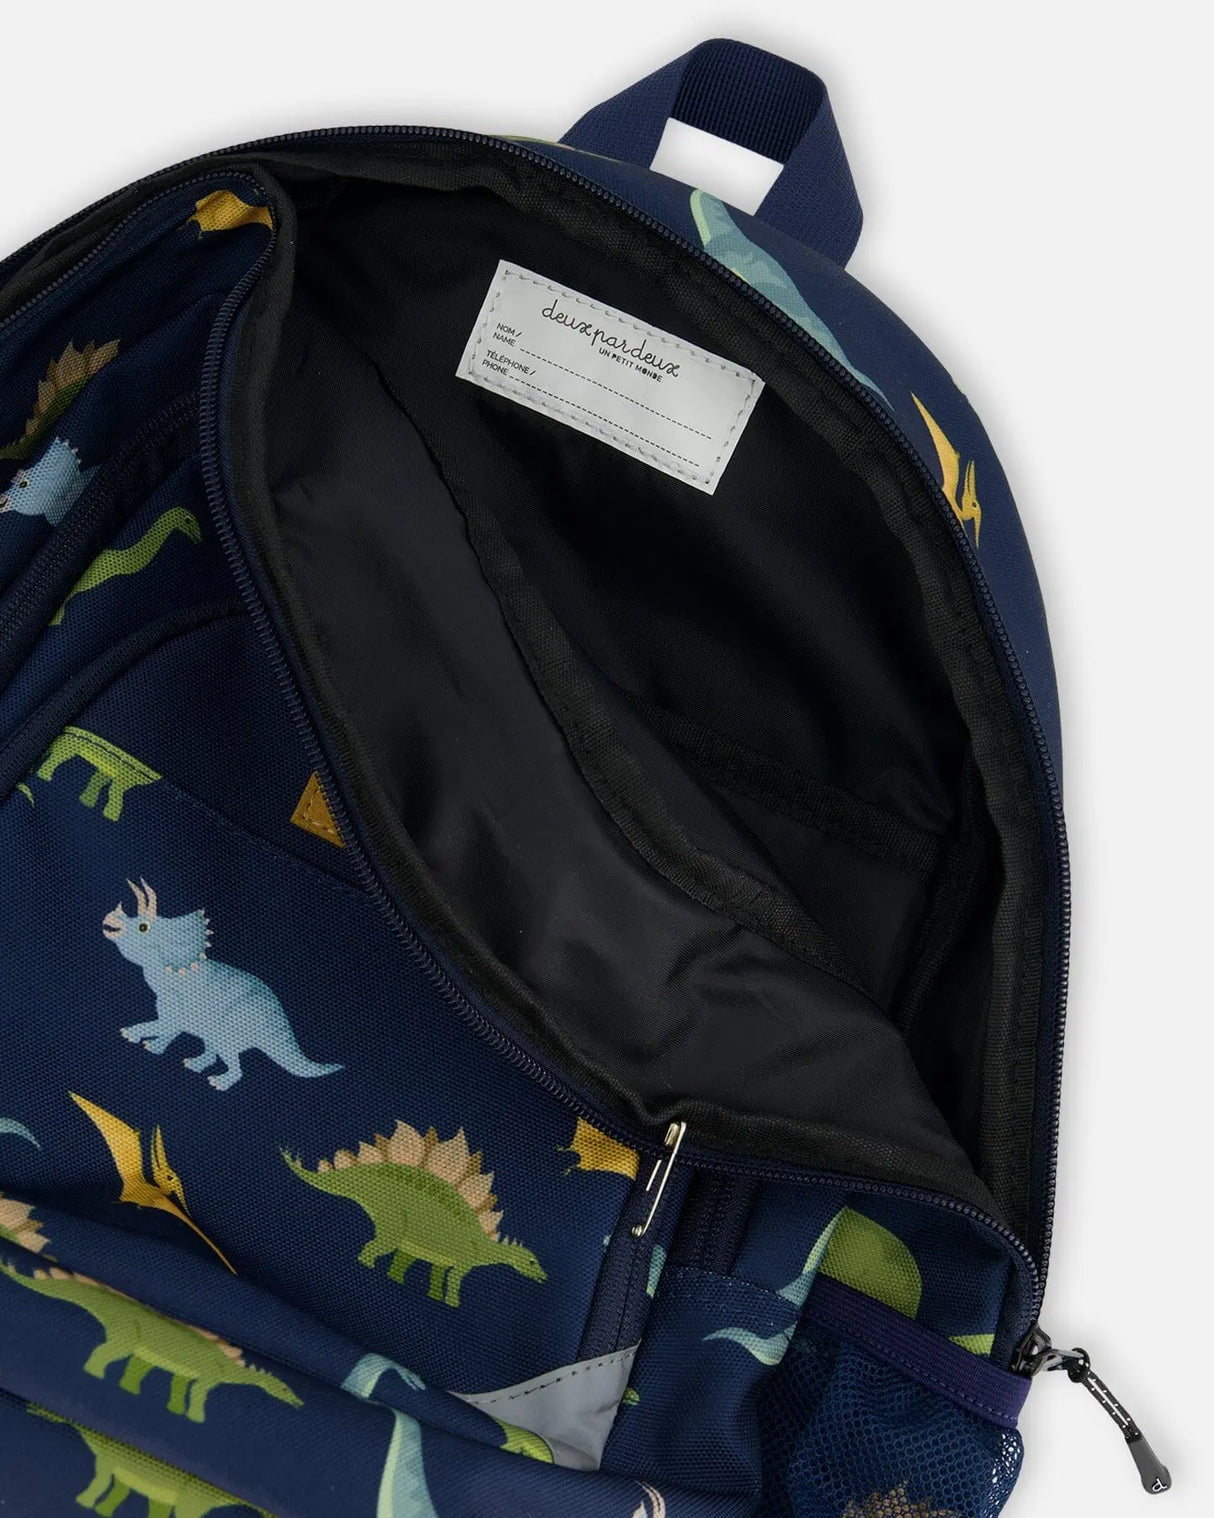 Toddler Backpack Navy Blue Printed Dinosaurs | Deux par Deux | Jenni Kidz